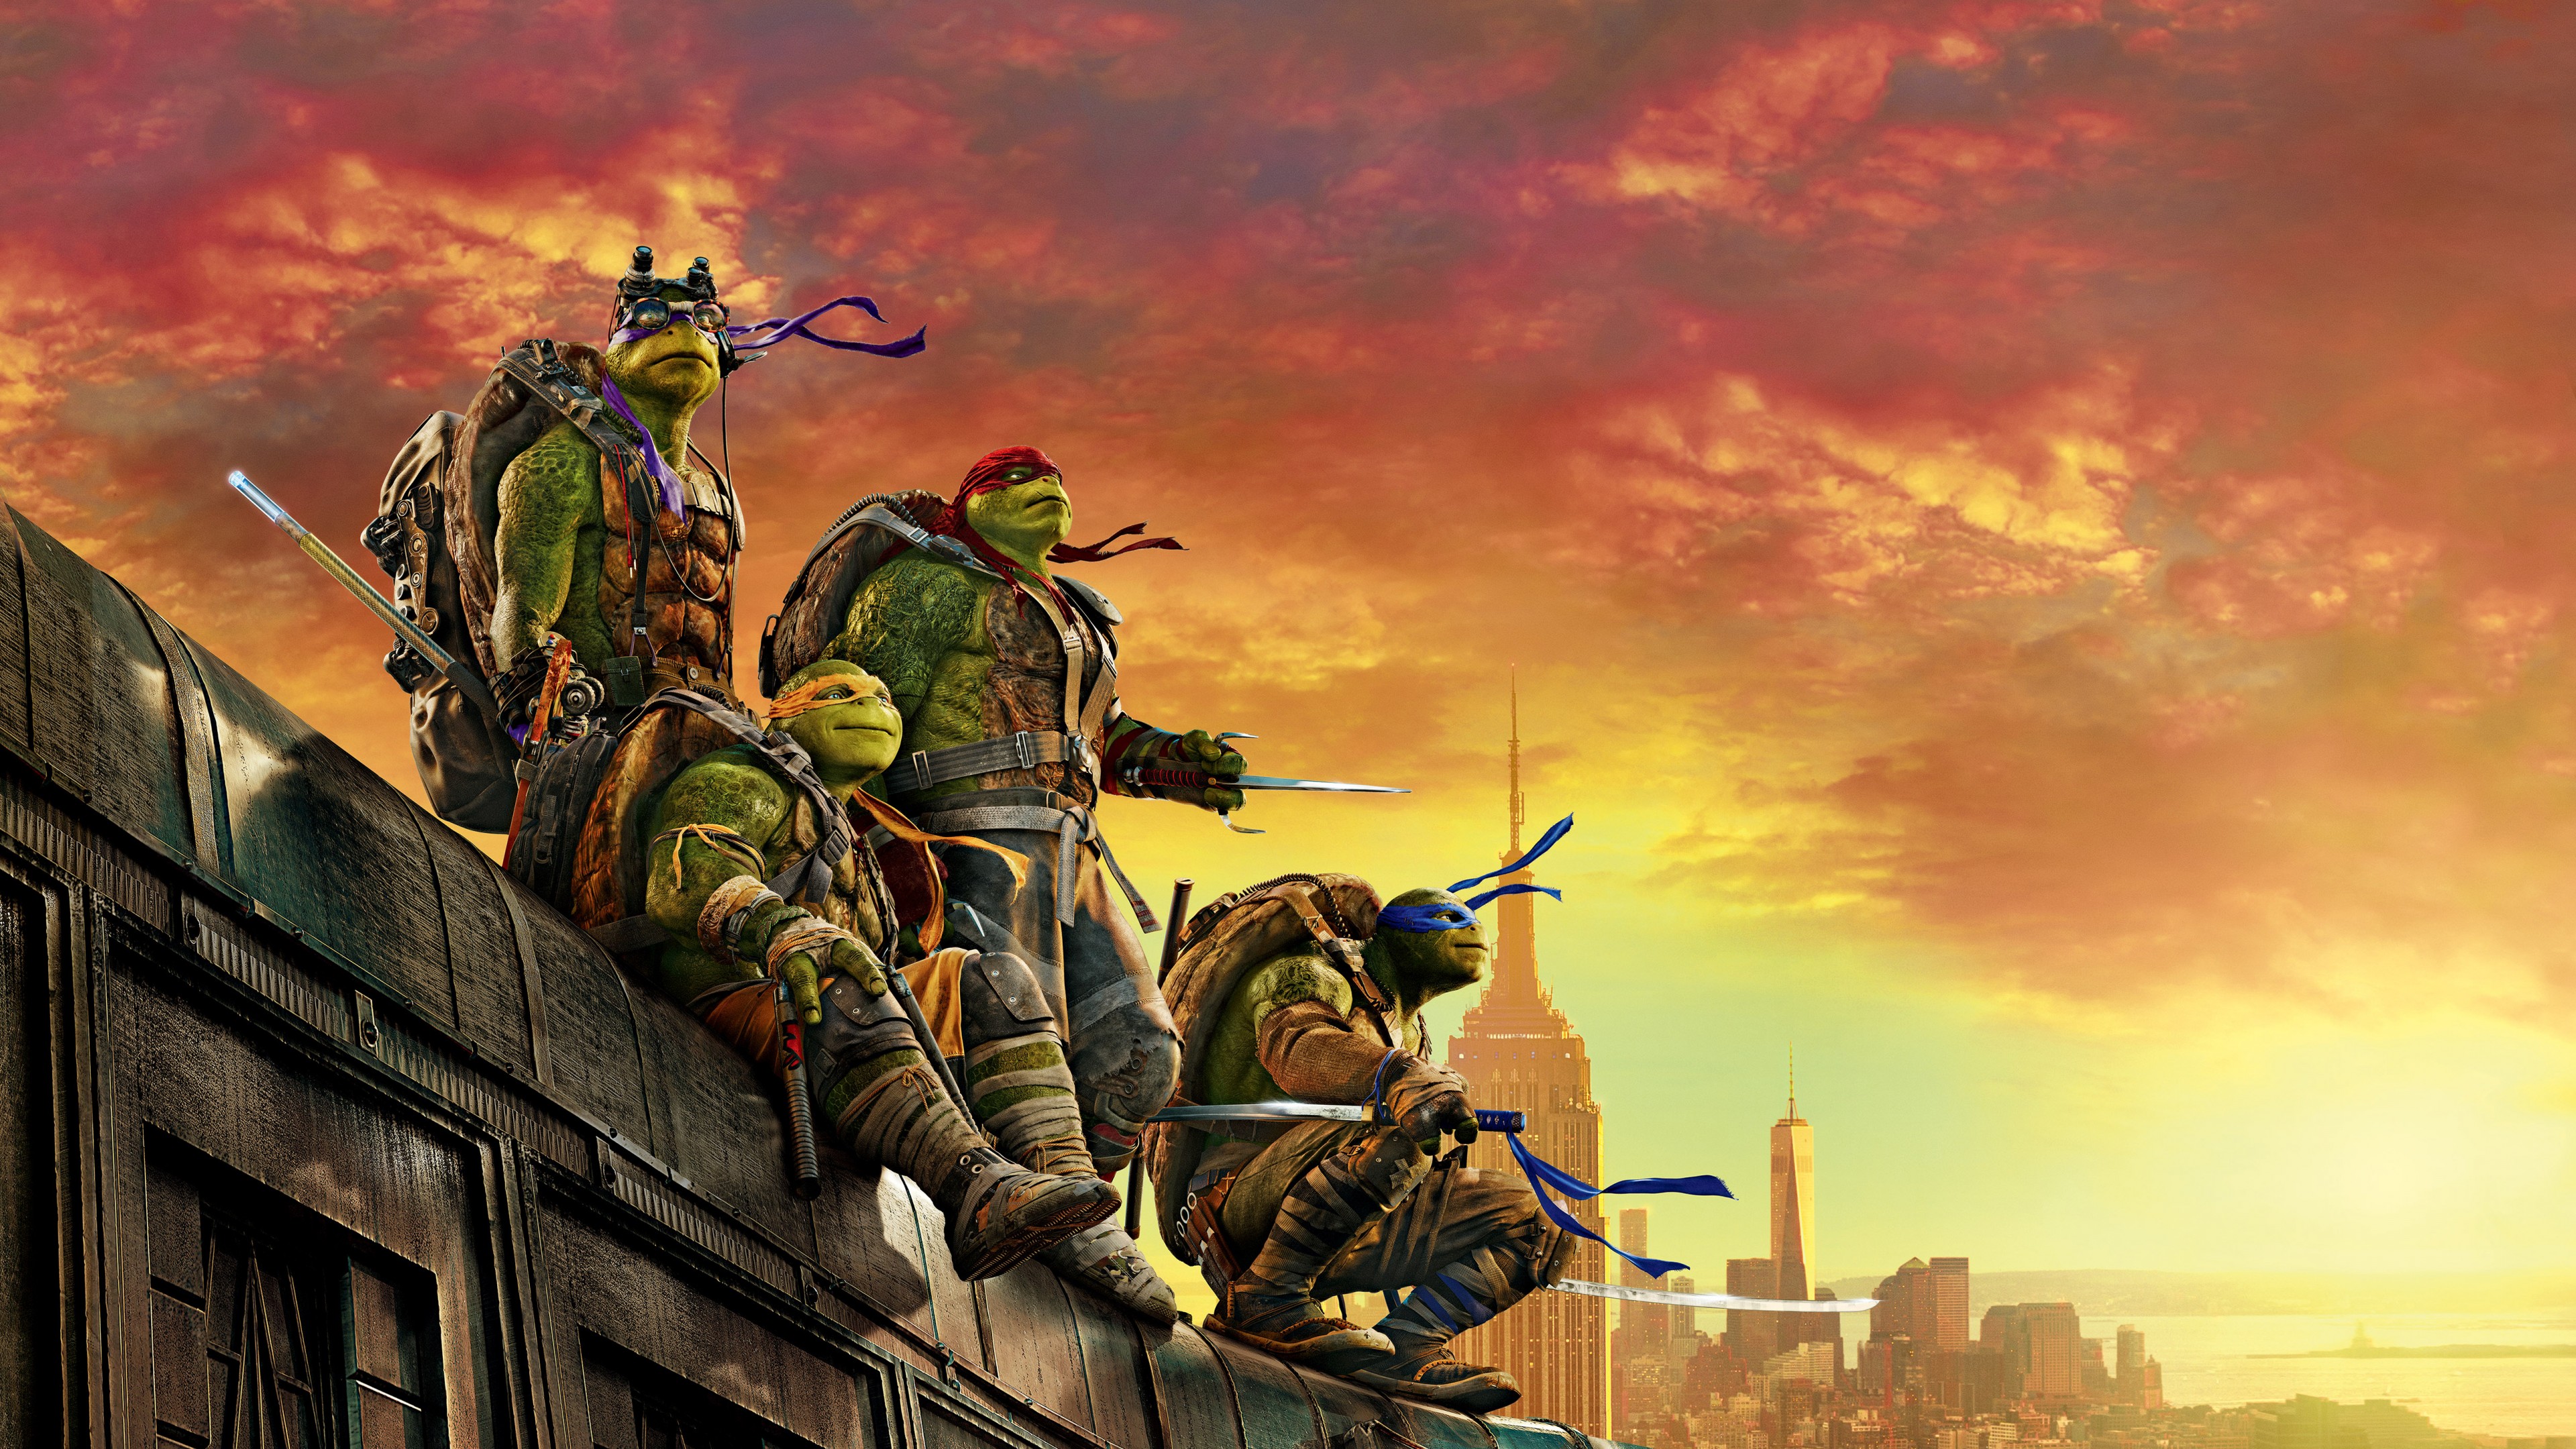 ninja turtles wallpaper,action adventure spiel,computerspiel,cg kunstwerk,spiele,shooter spiel